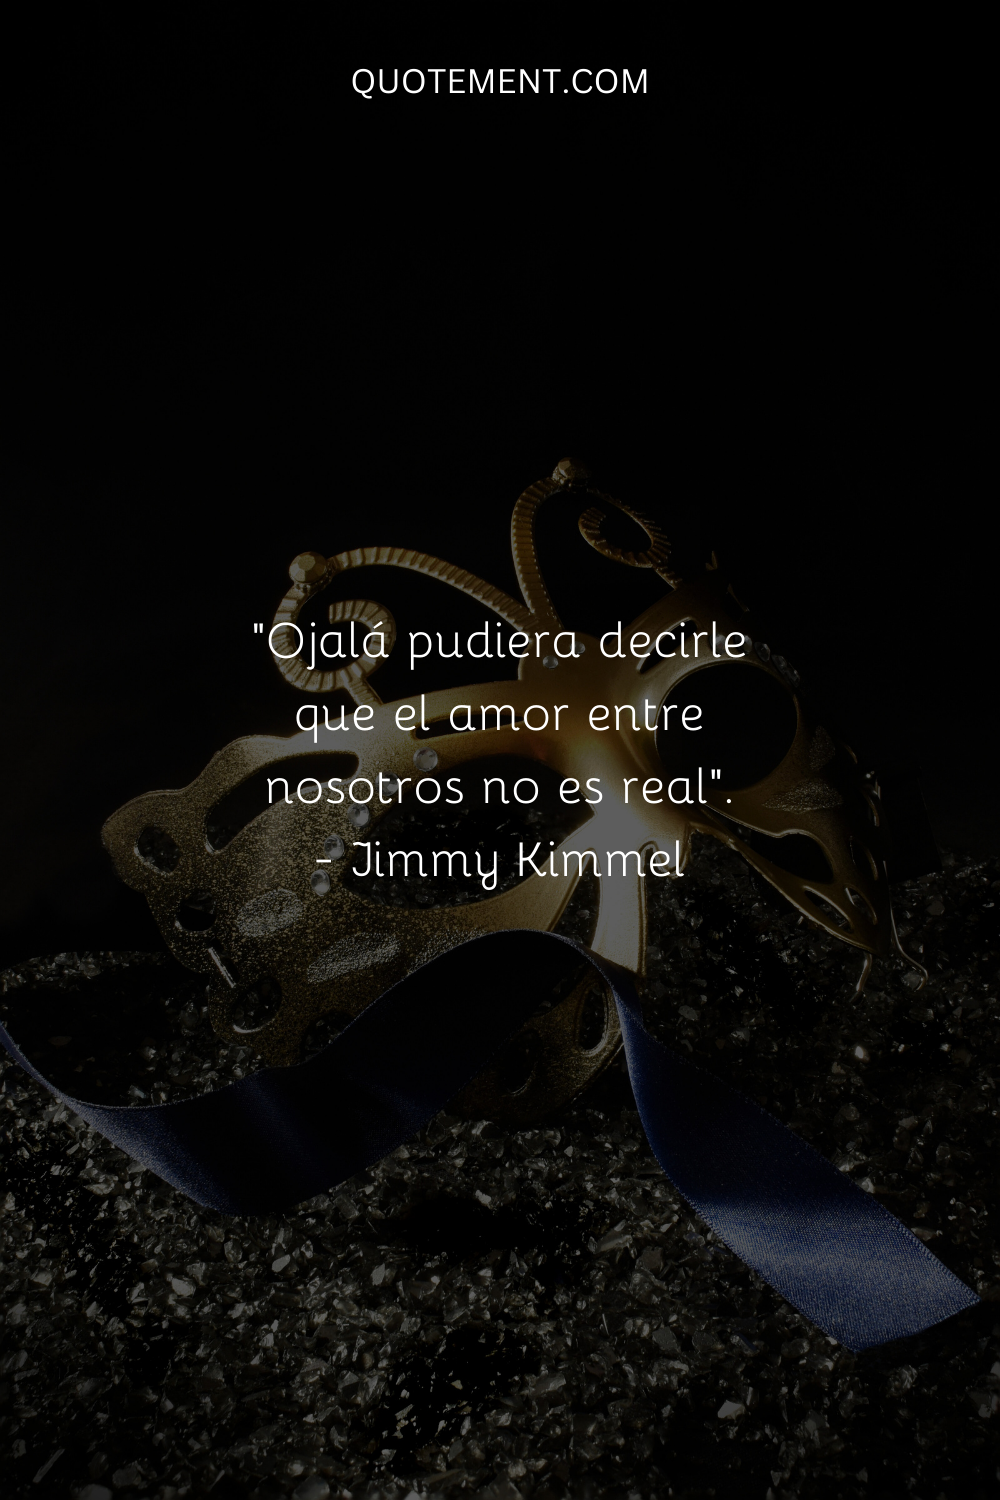 "Ojalá pudiera decirle que el amor entre nosotros no es real". - Jimmy Kimmel